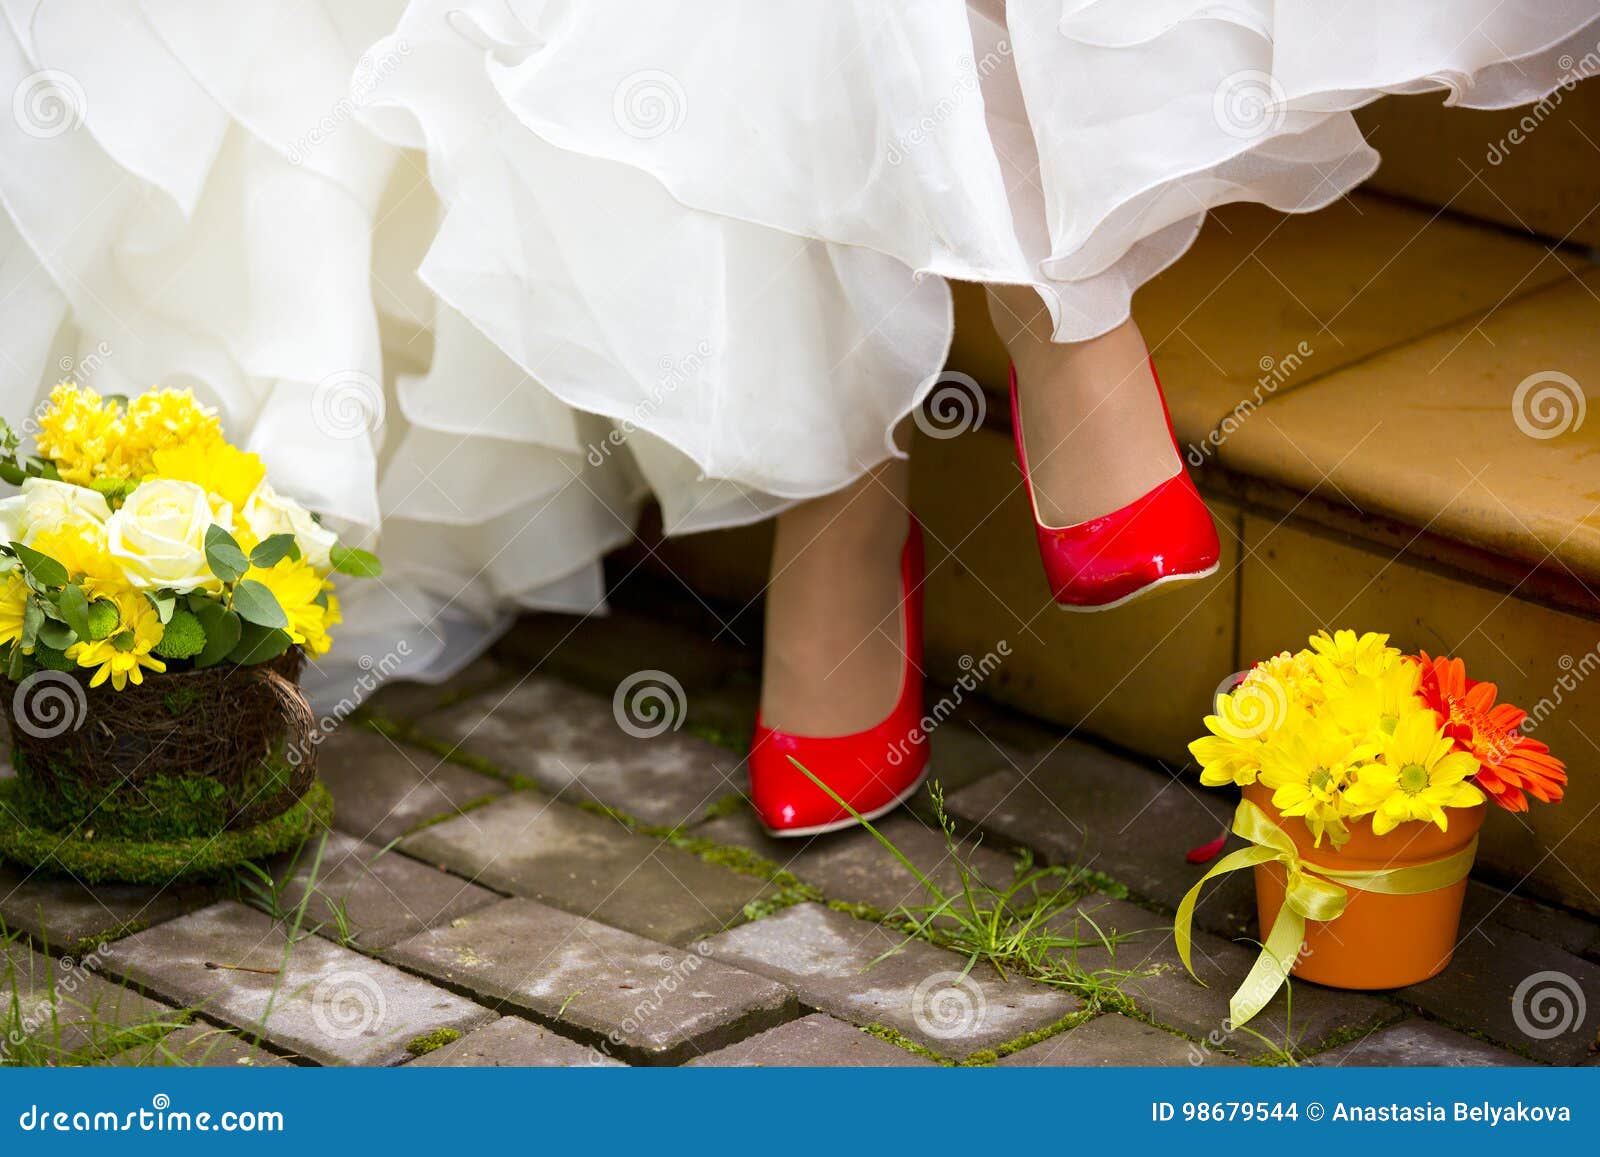 Sposa Con Scarpe Rosse.Ragazza In Scarpe Rosse Vestito Da Sposa Bianco E Due Vasi Da